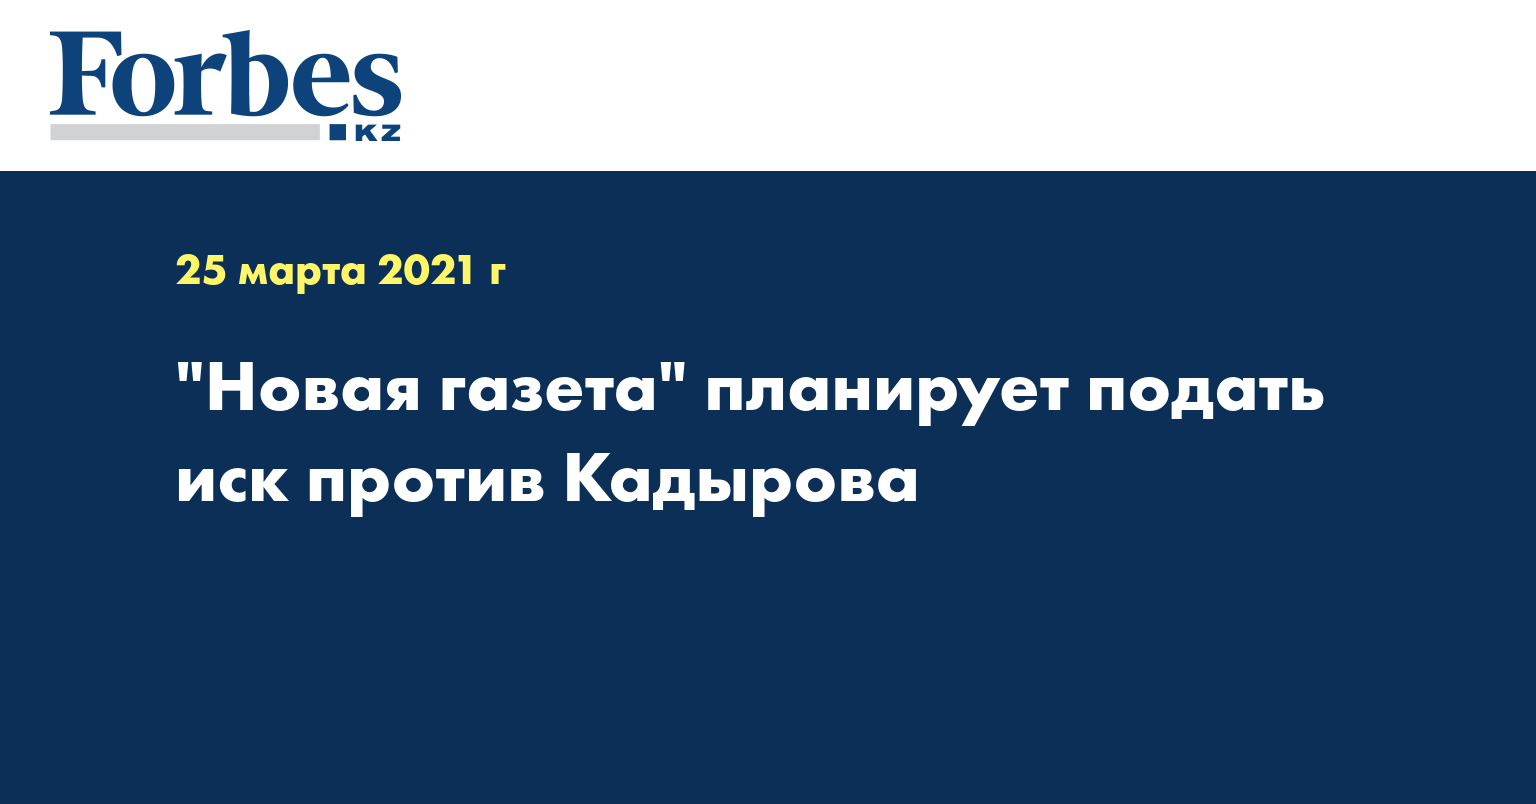 «Новая газета» планирует подать иск против Кадырова